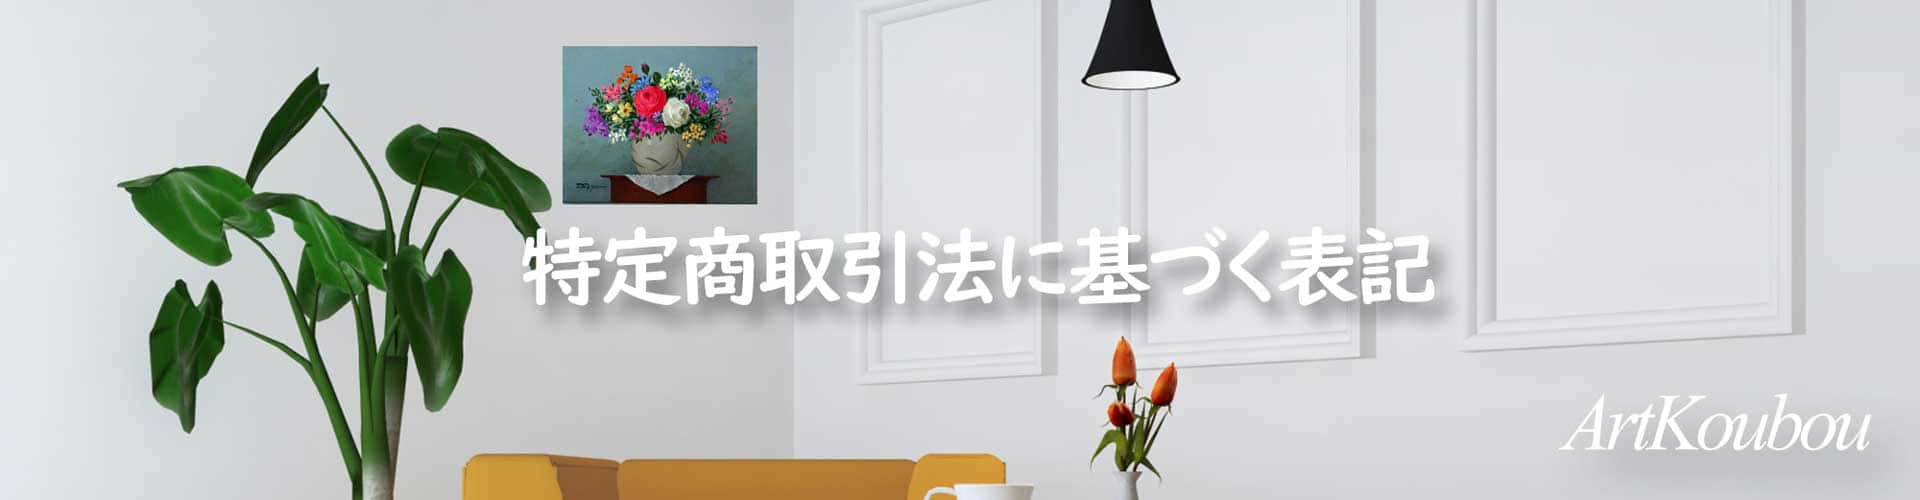 岡山のアート工房の特定商取引法に基づく表記